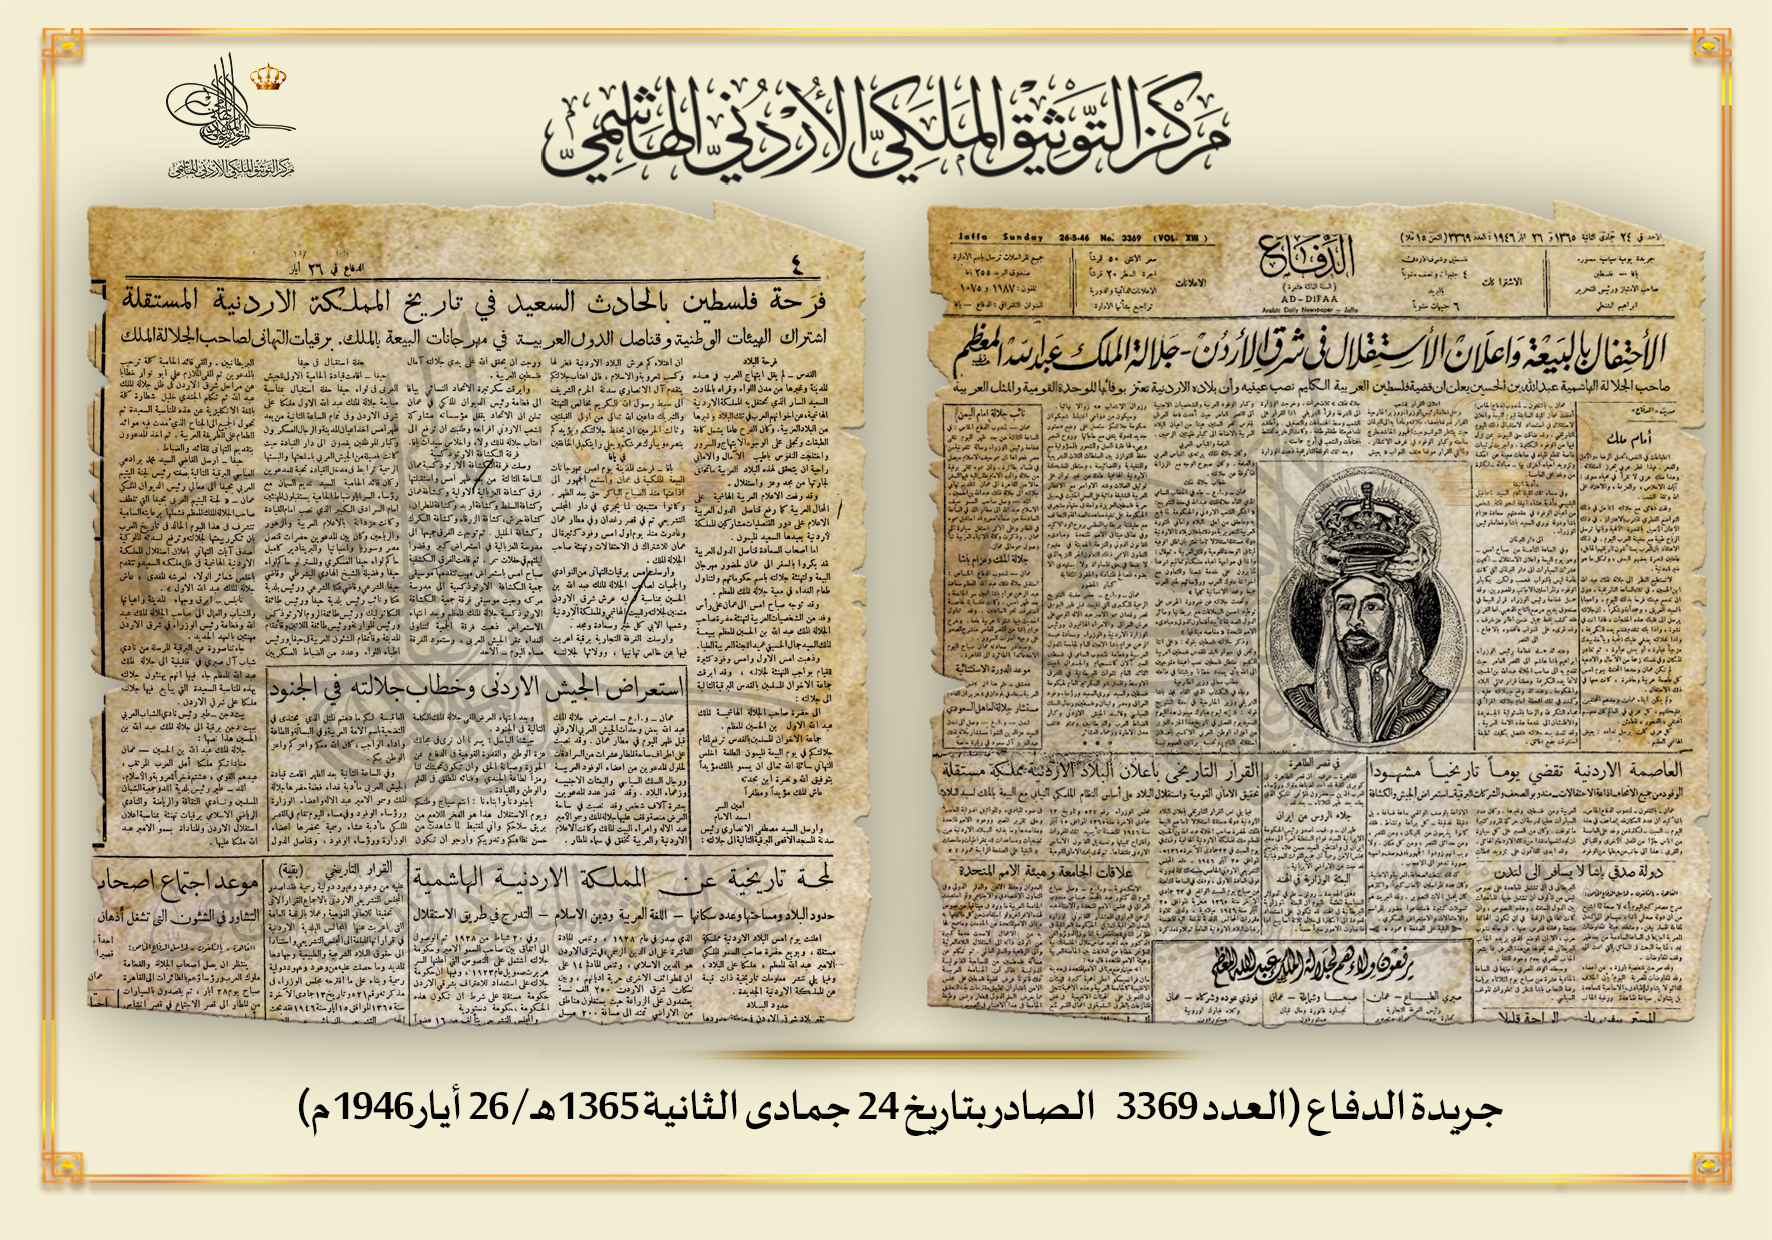 التوثيق الملكي يعرض جريدة صادرة بمناسبة عيد الاستقلال